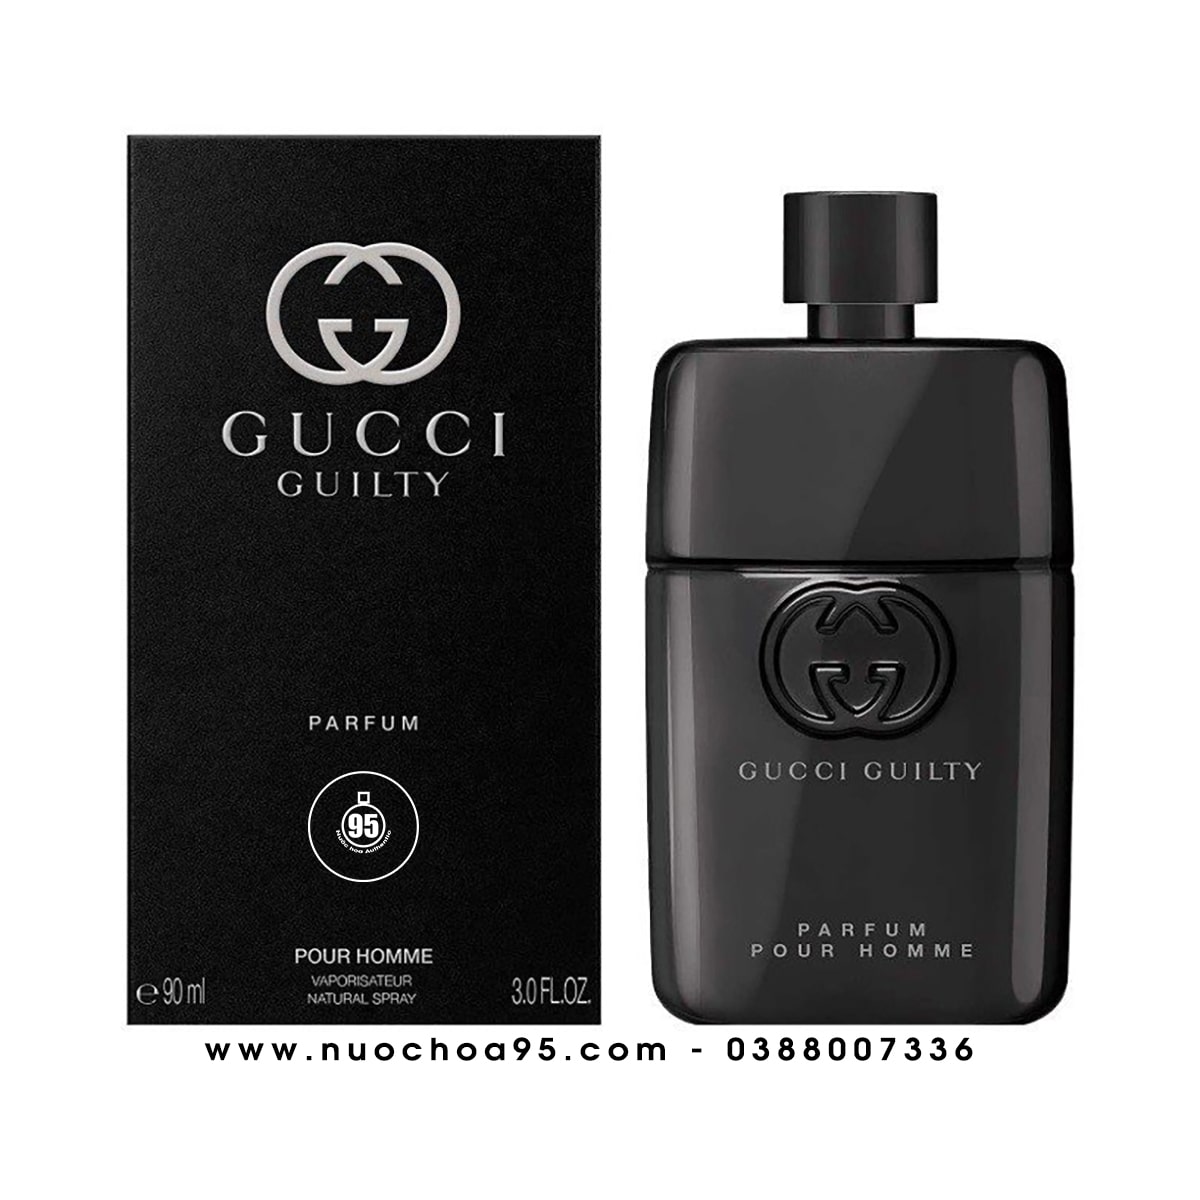 Nước hoa Gucci Guilty Pour Homme Parfum